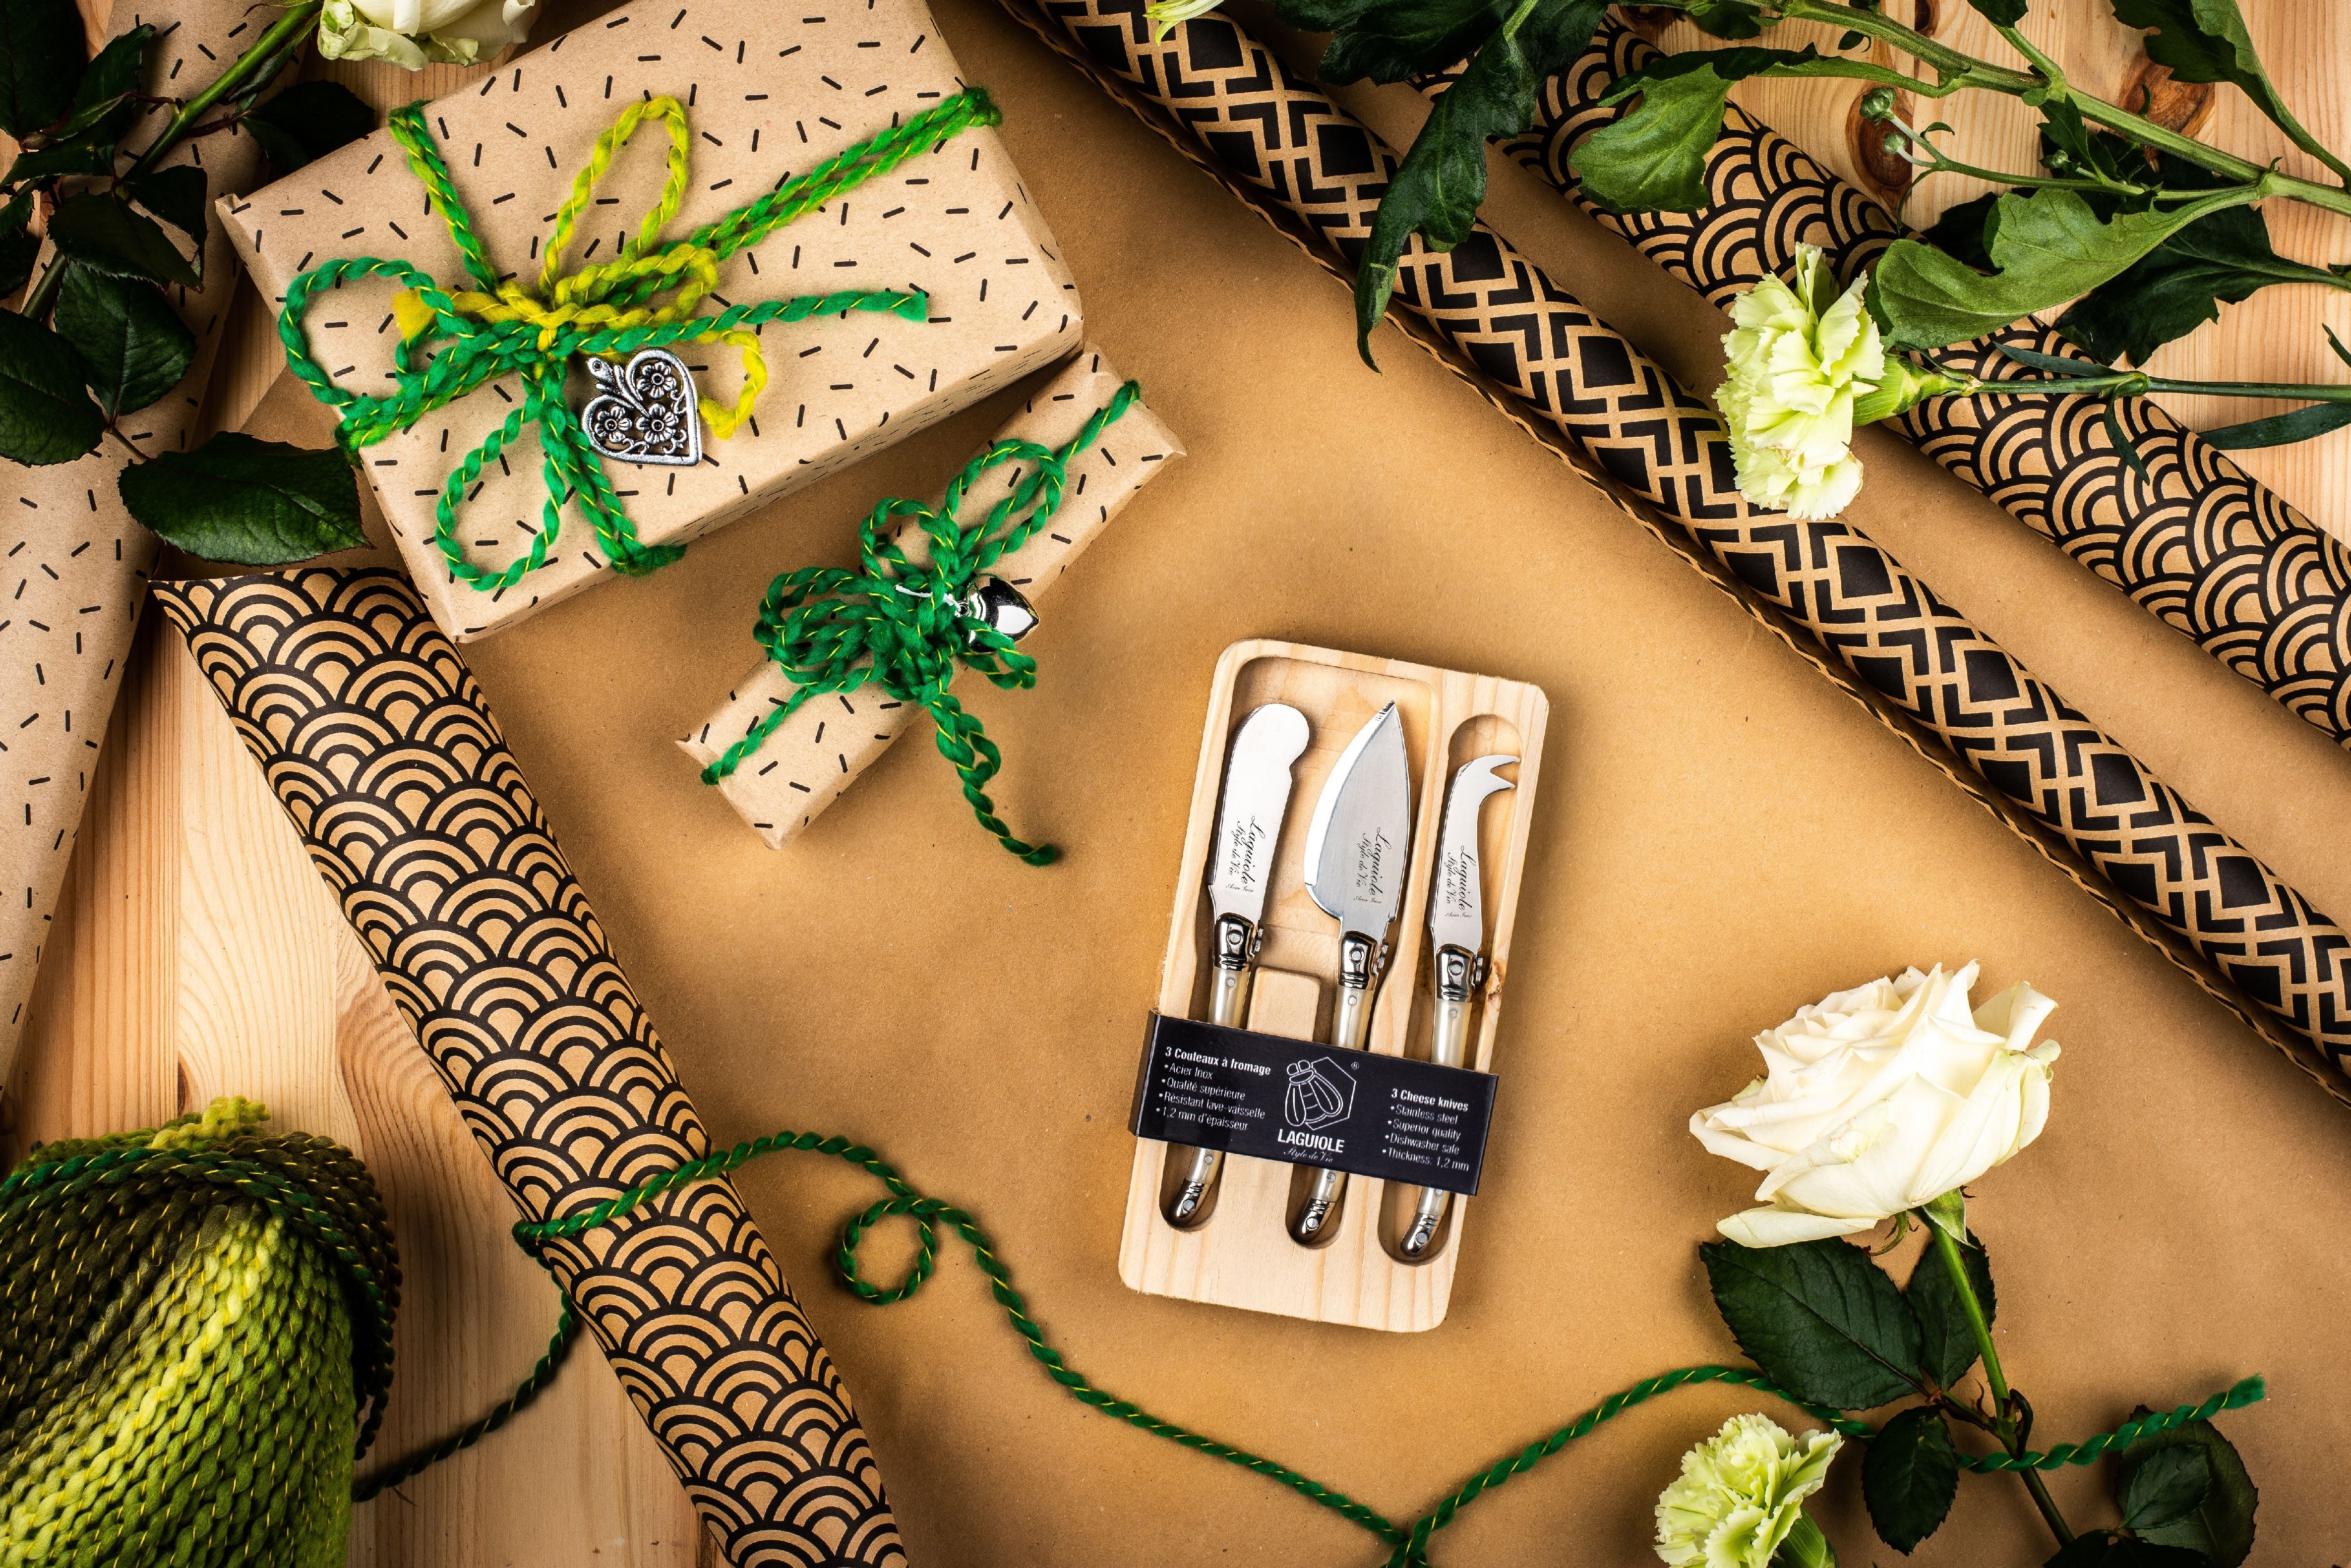 Style de vie autentique Laguiole Premium Line Cheese Knives 3 Piece Set, Pearl